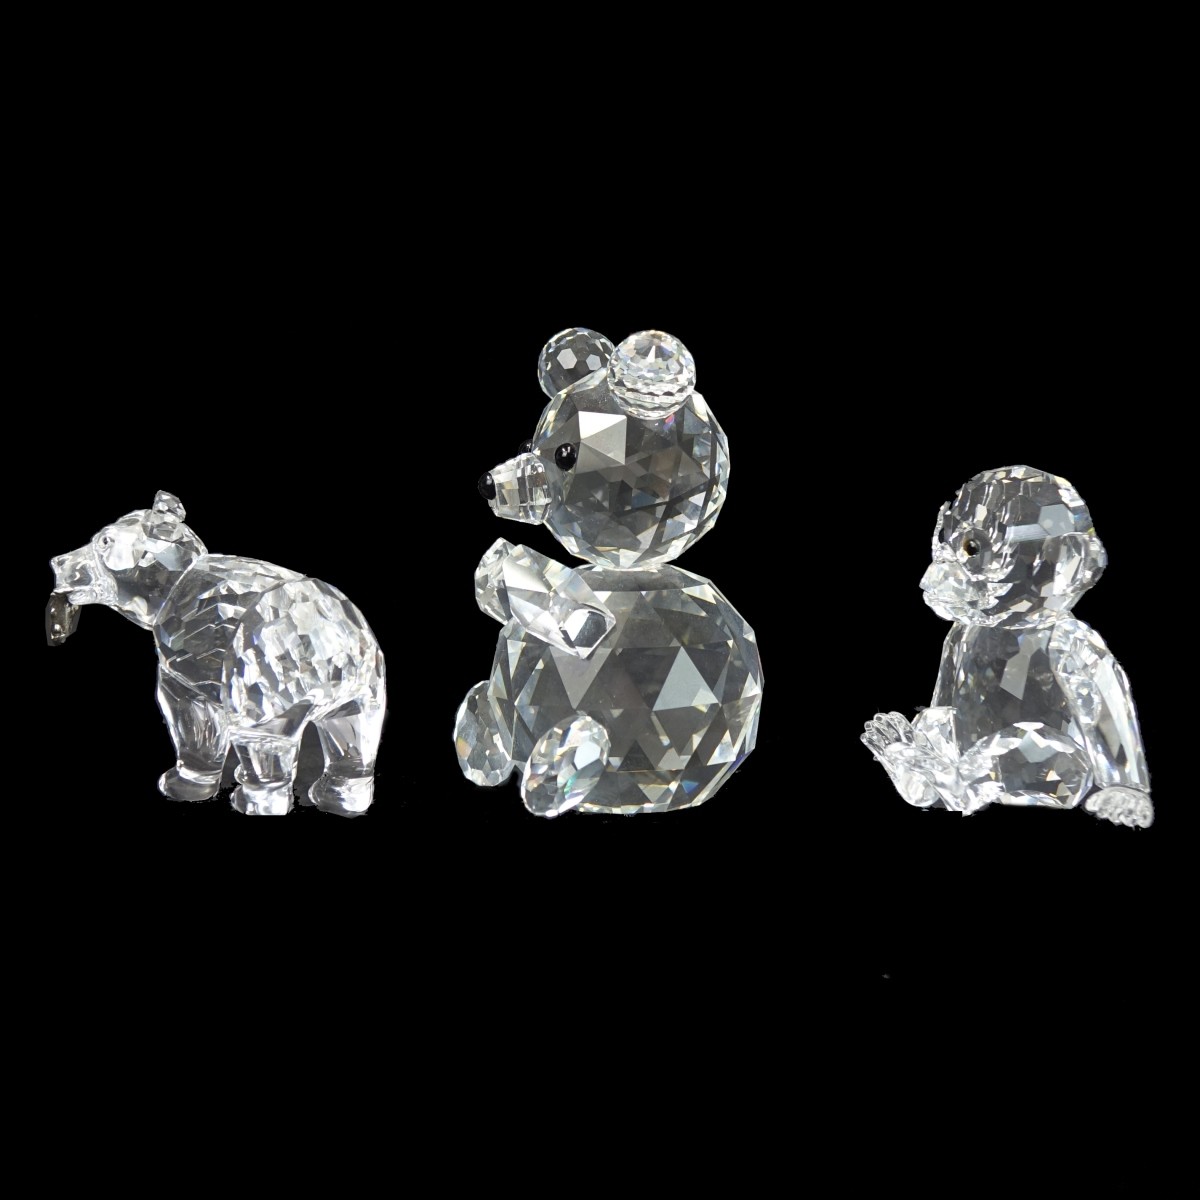 Three (3) Swarovski Crystal Figurines